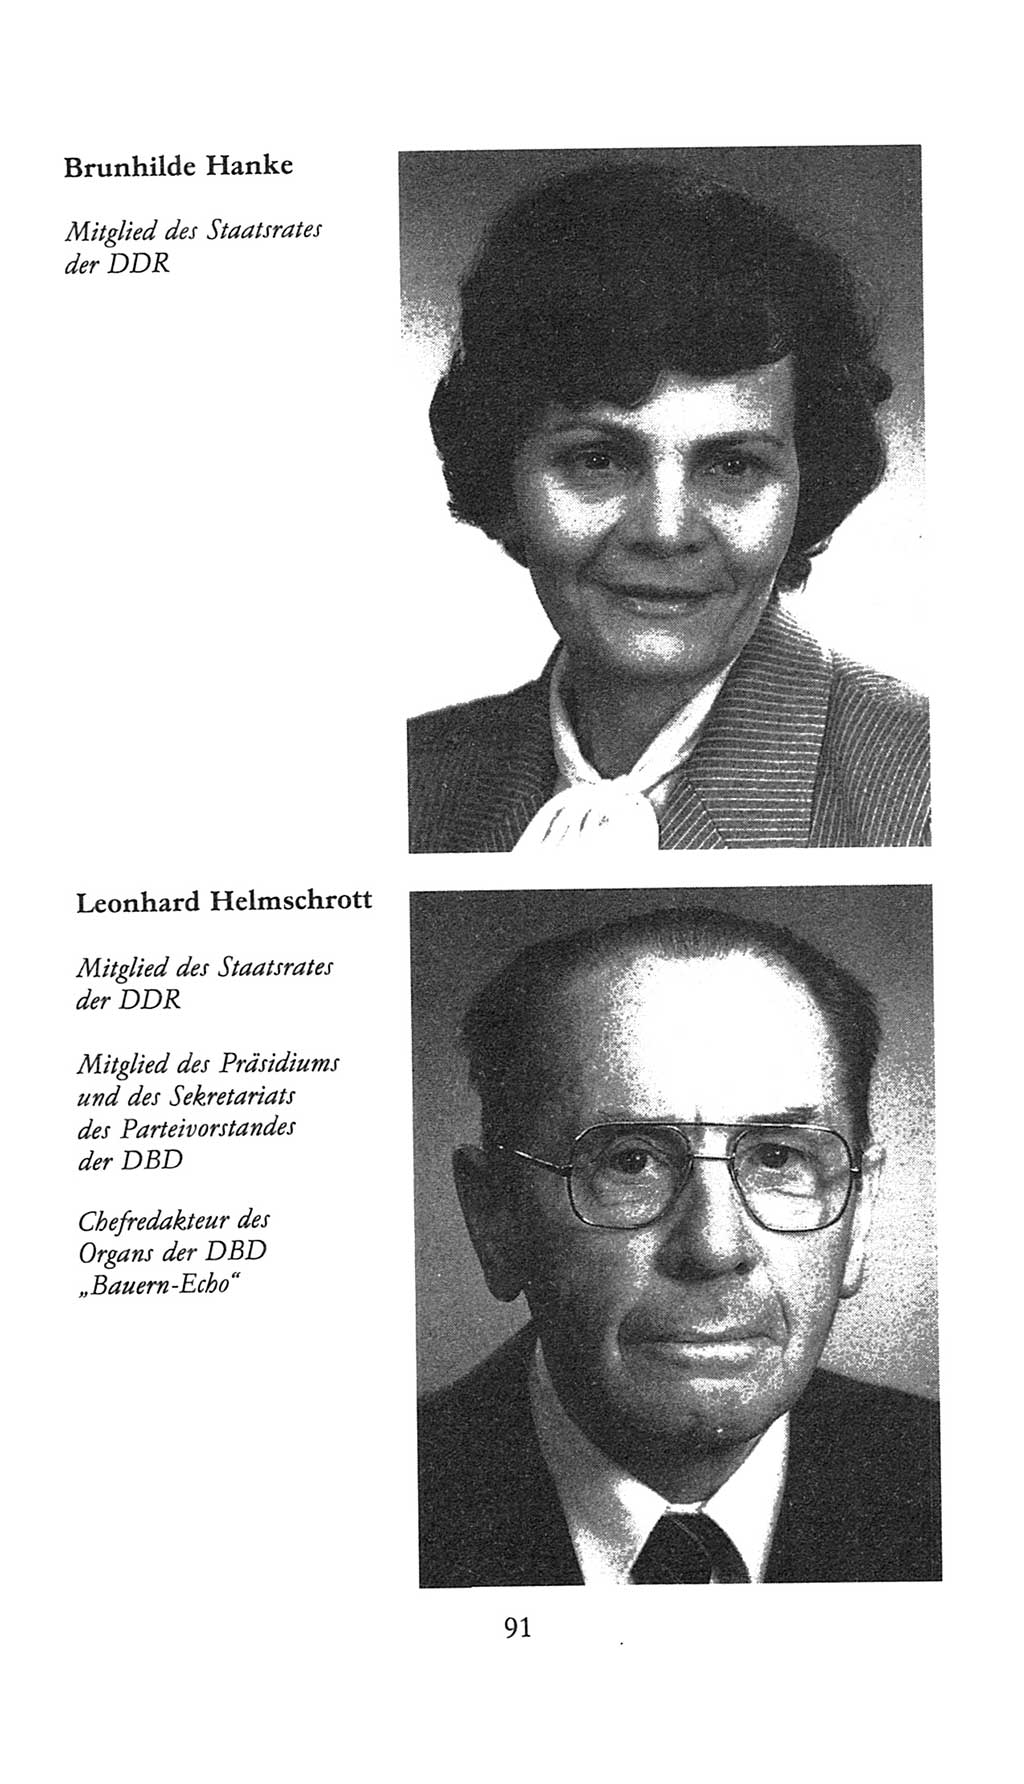 Volkskammer (VK) der Deutschen Demokratischen Republik (DDR), 9. Wahlperiode 1986-1990, Seite 91 (VK. DDR 9. WP. 1986-1990, S. 91)